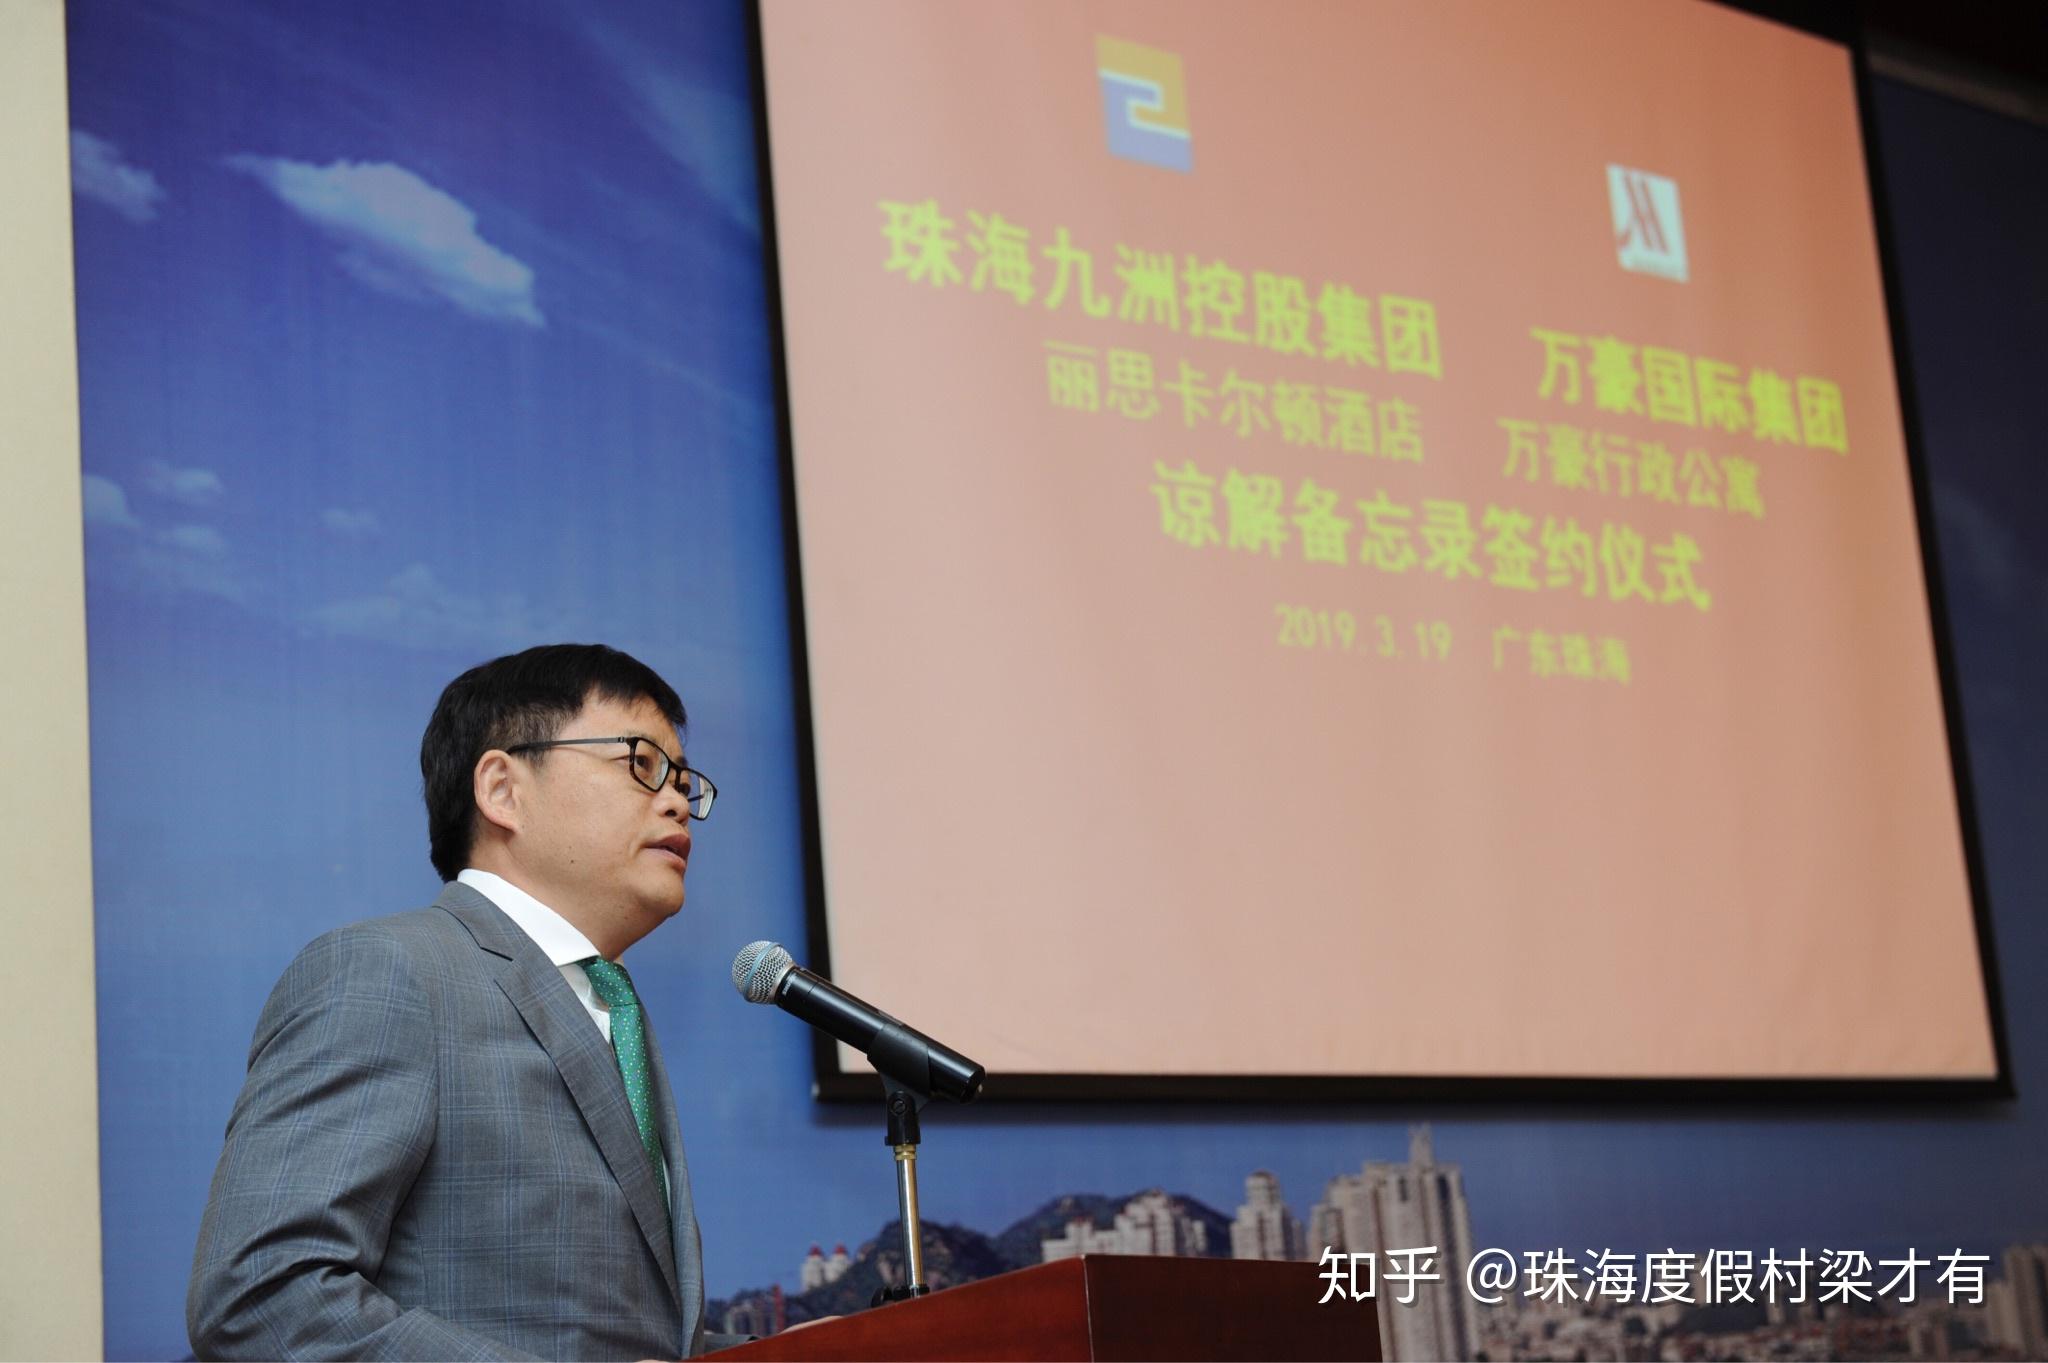 董事长黄鑫在致辞中表示,此次九洲湾项目携手万豪国际集团酒店品牌